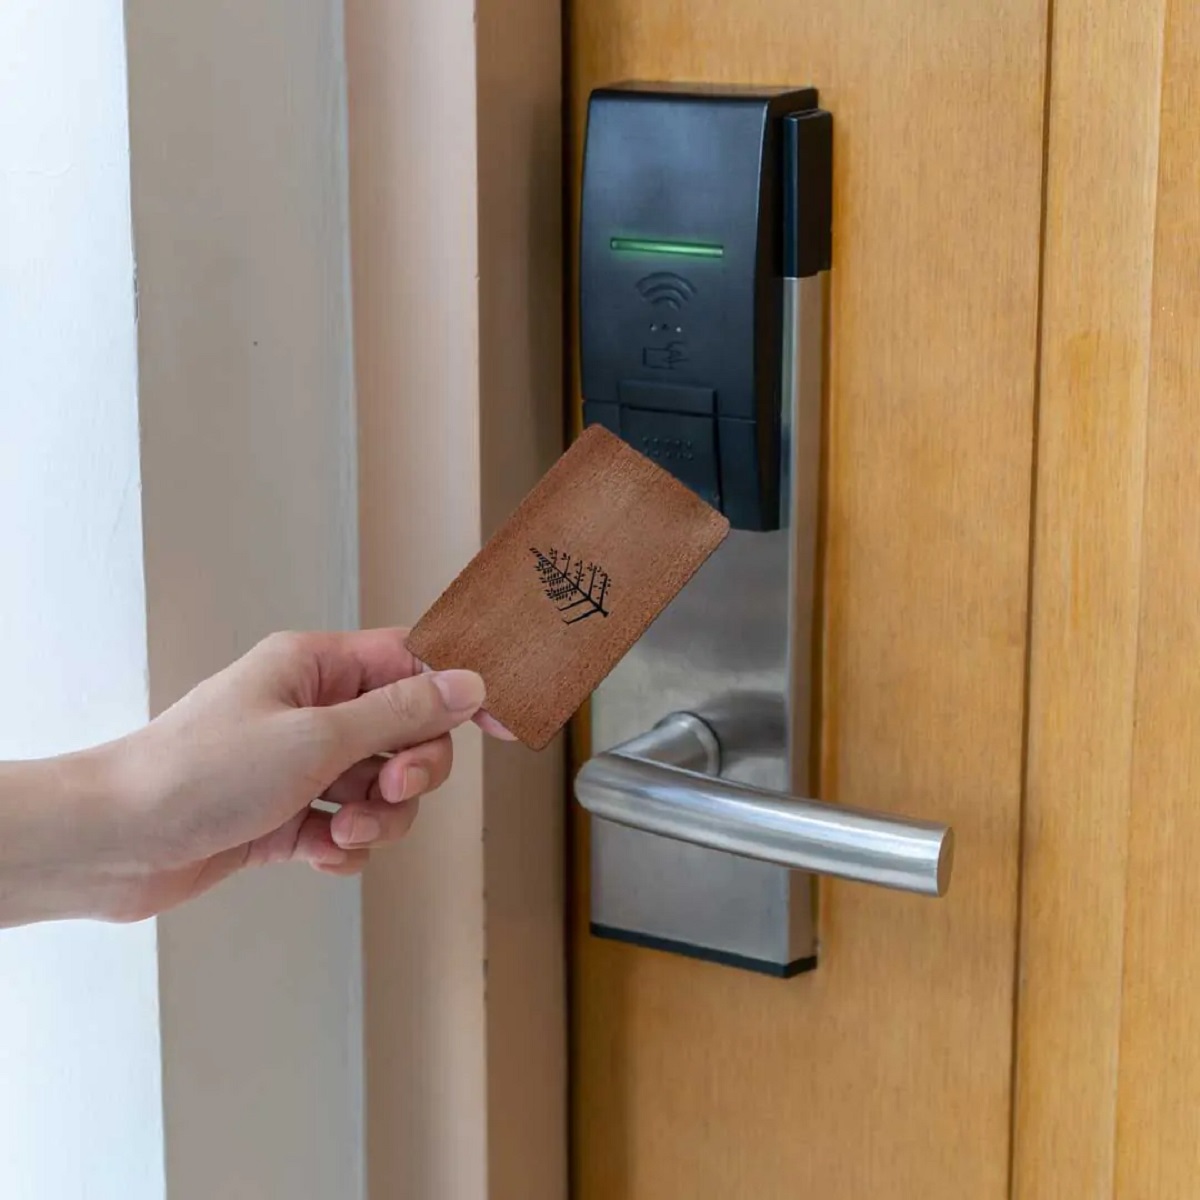 How To Bypass RFID Door Lock